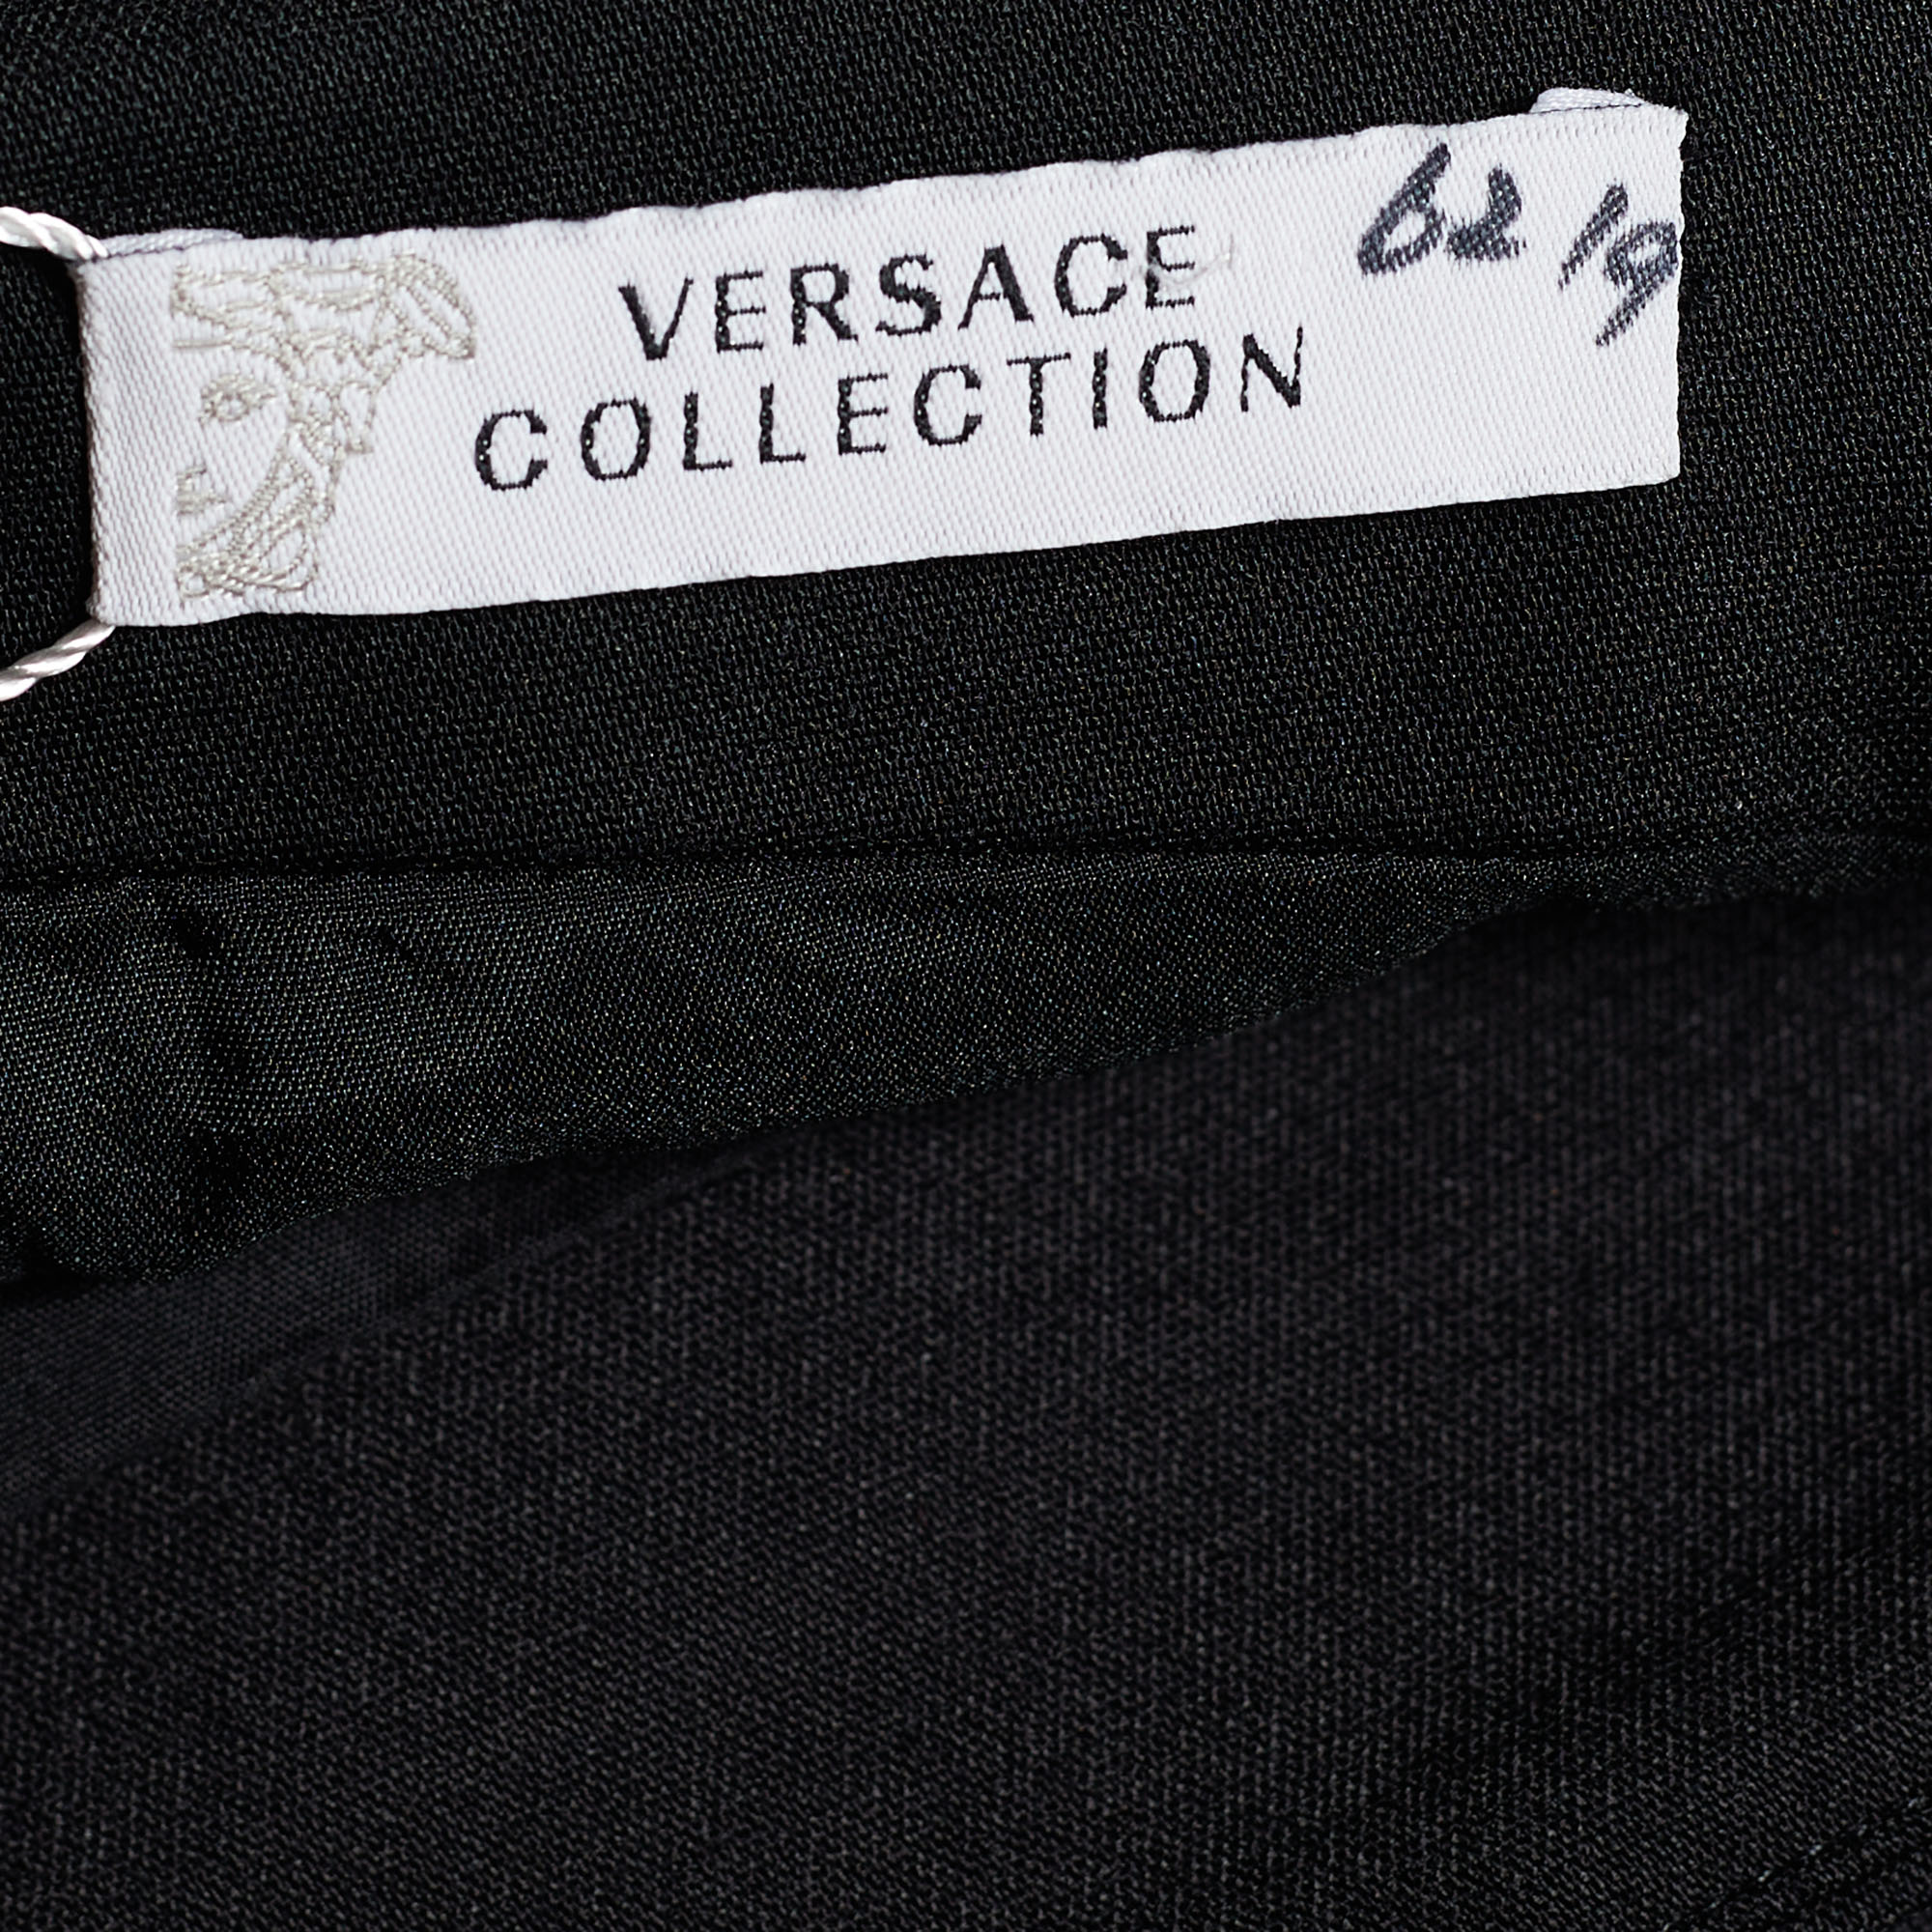 Versace Collection Black Cotton Knit Pencil Skirt L